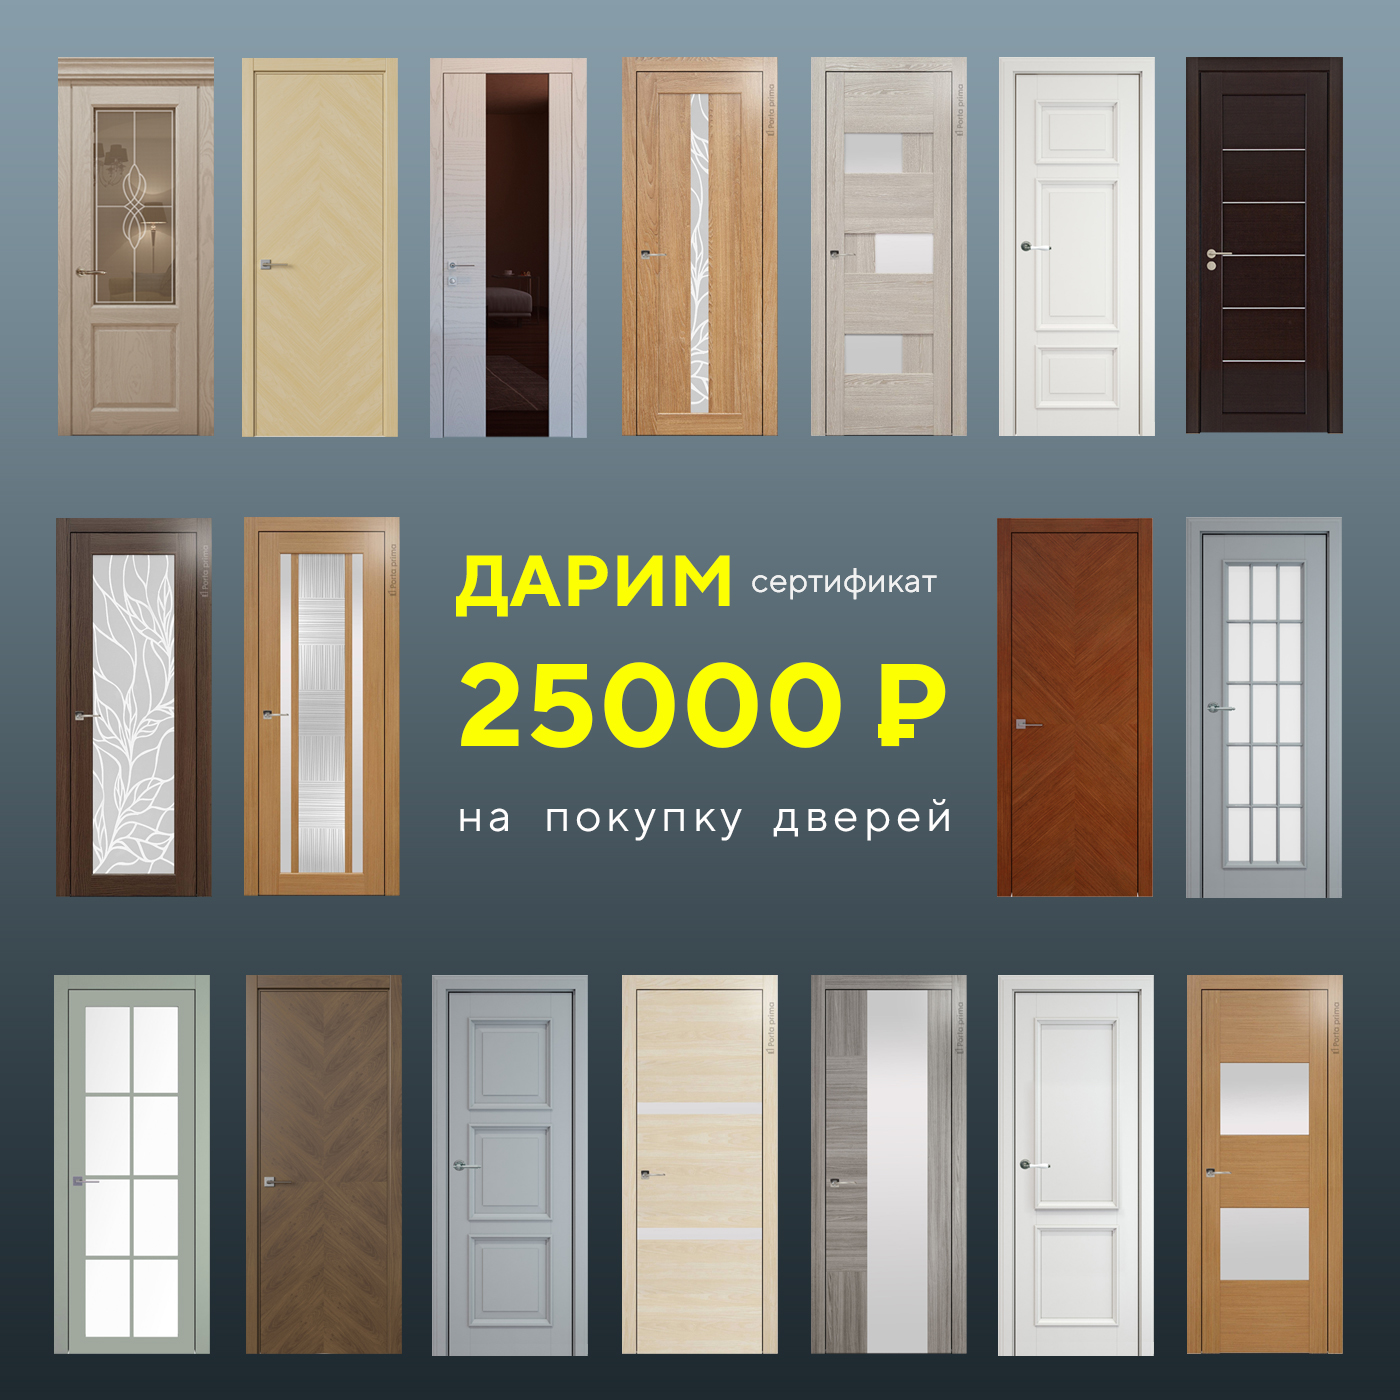 Дарим 25000 рублей на покупку дверей!